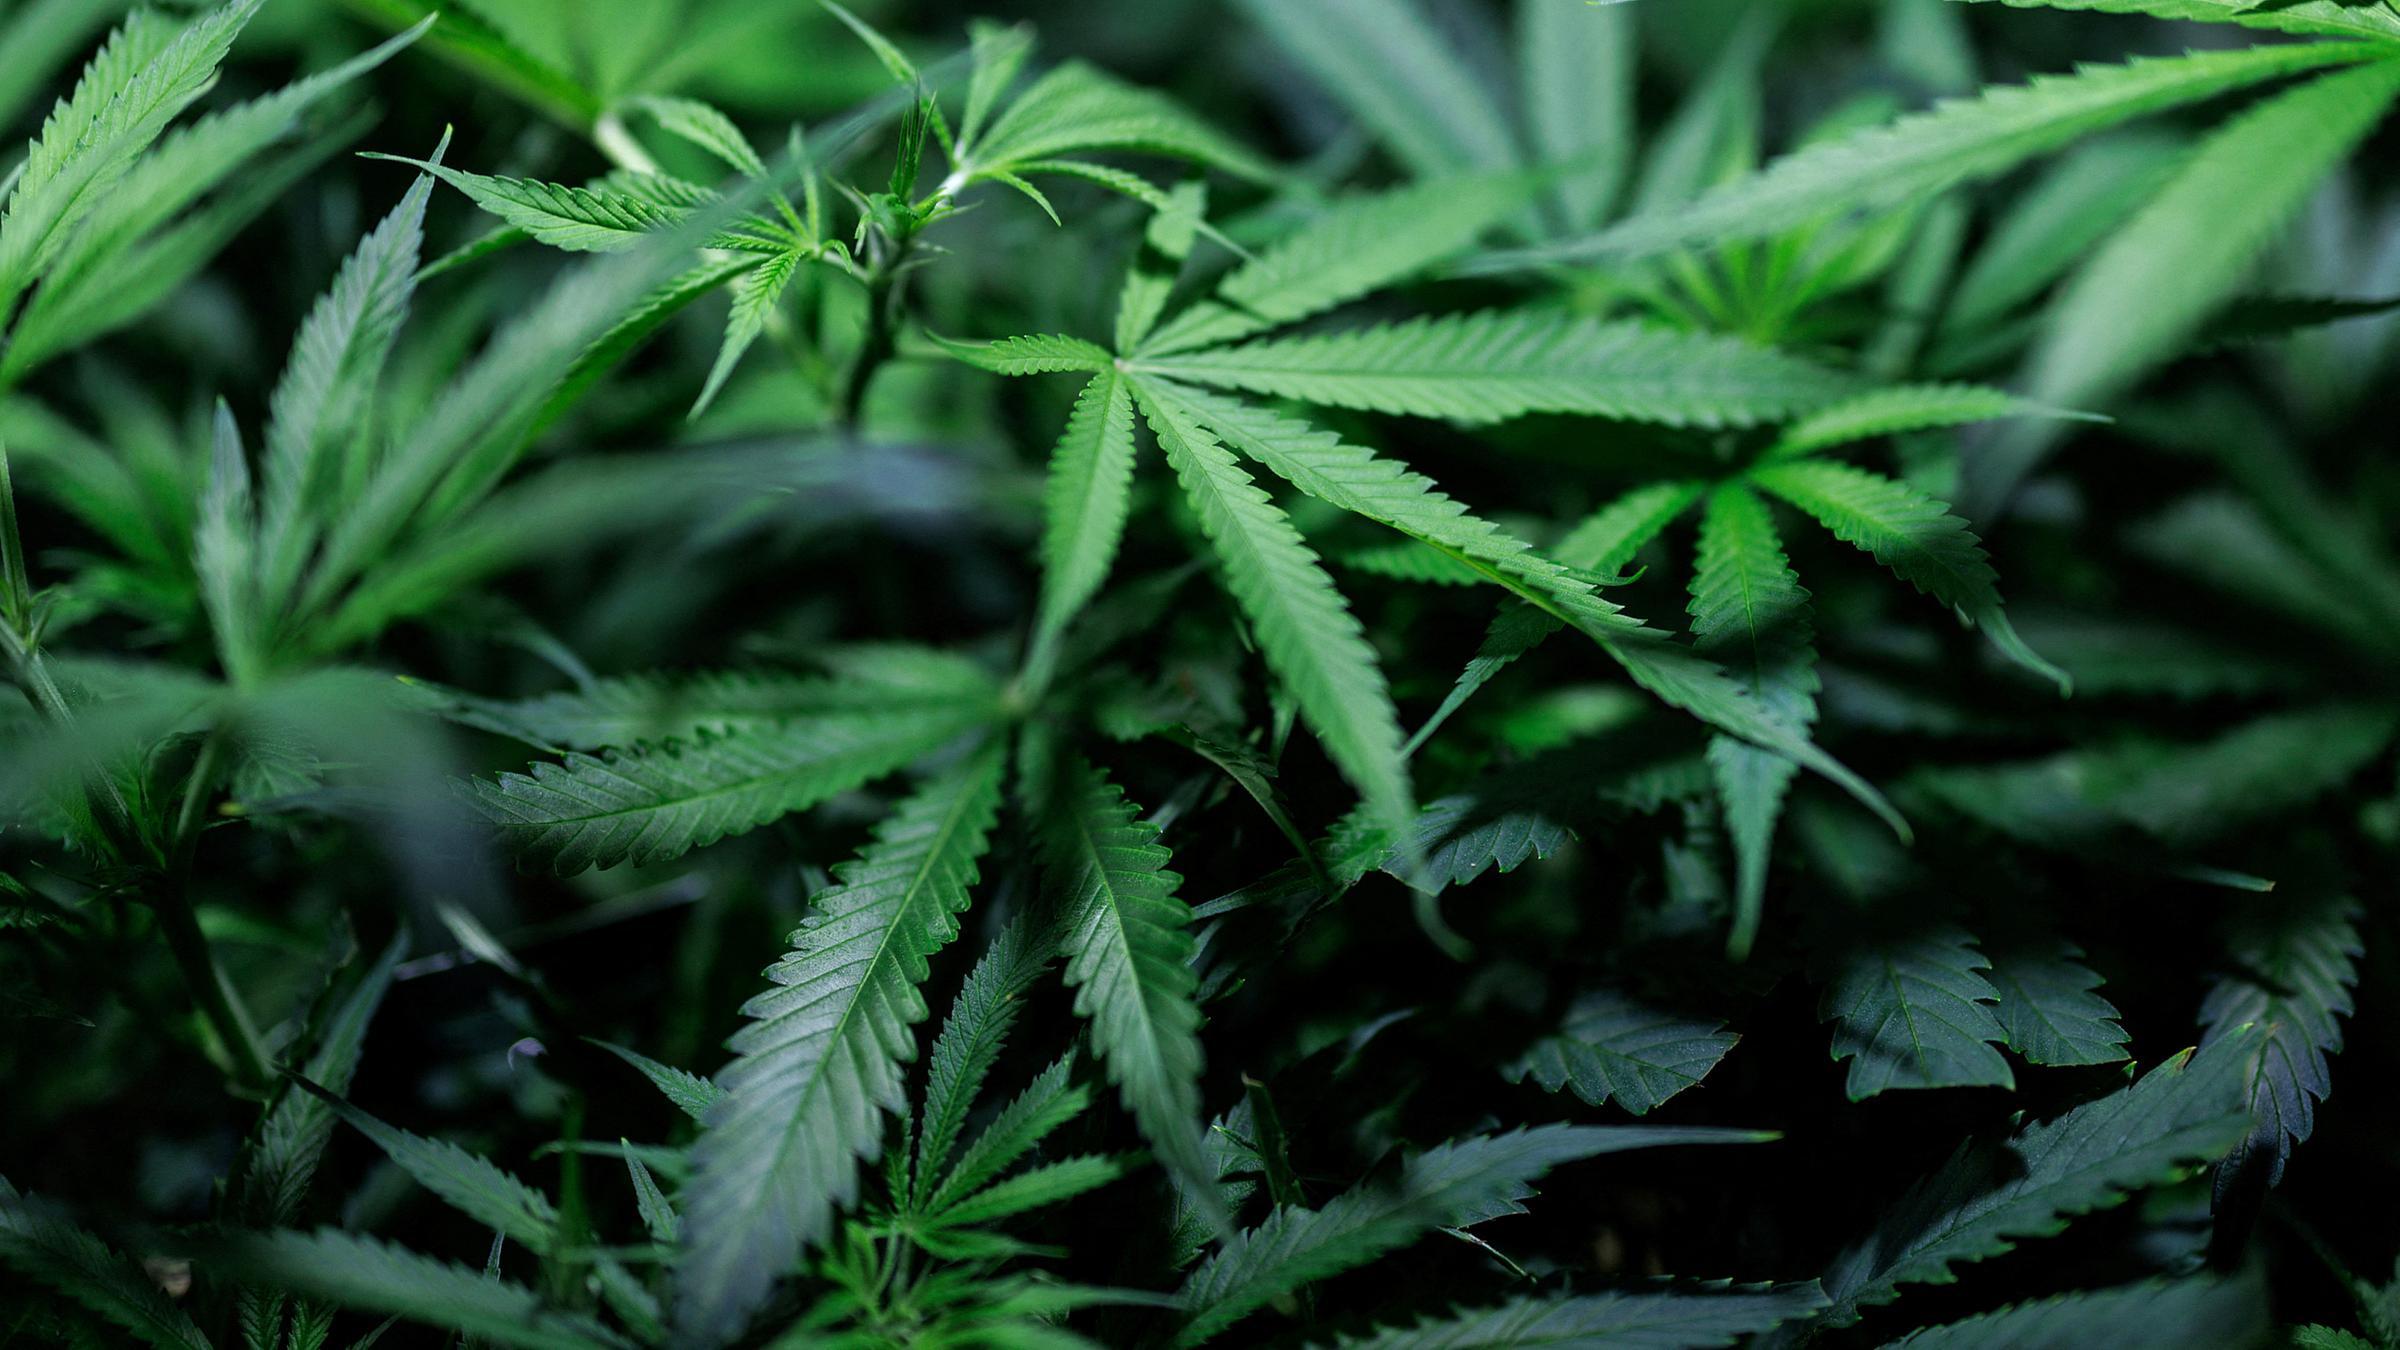 Cannabispflanzen wachsen im Klonraum eines Hersteller von medizinischen Cannabisprodukten